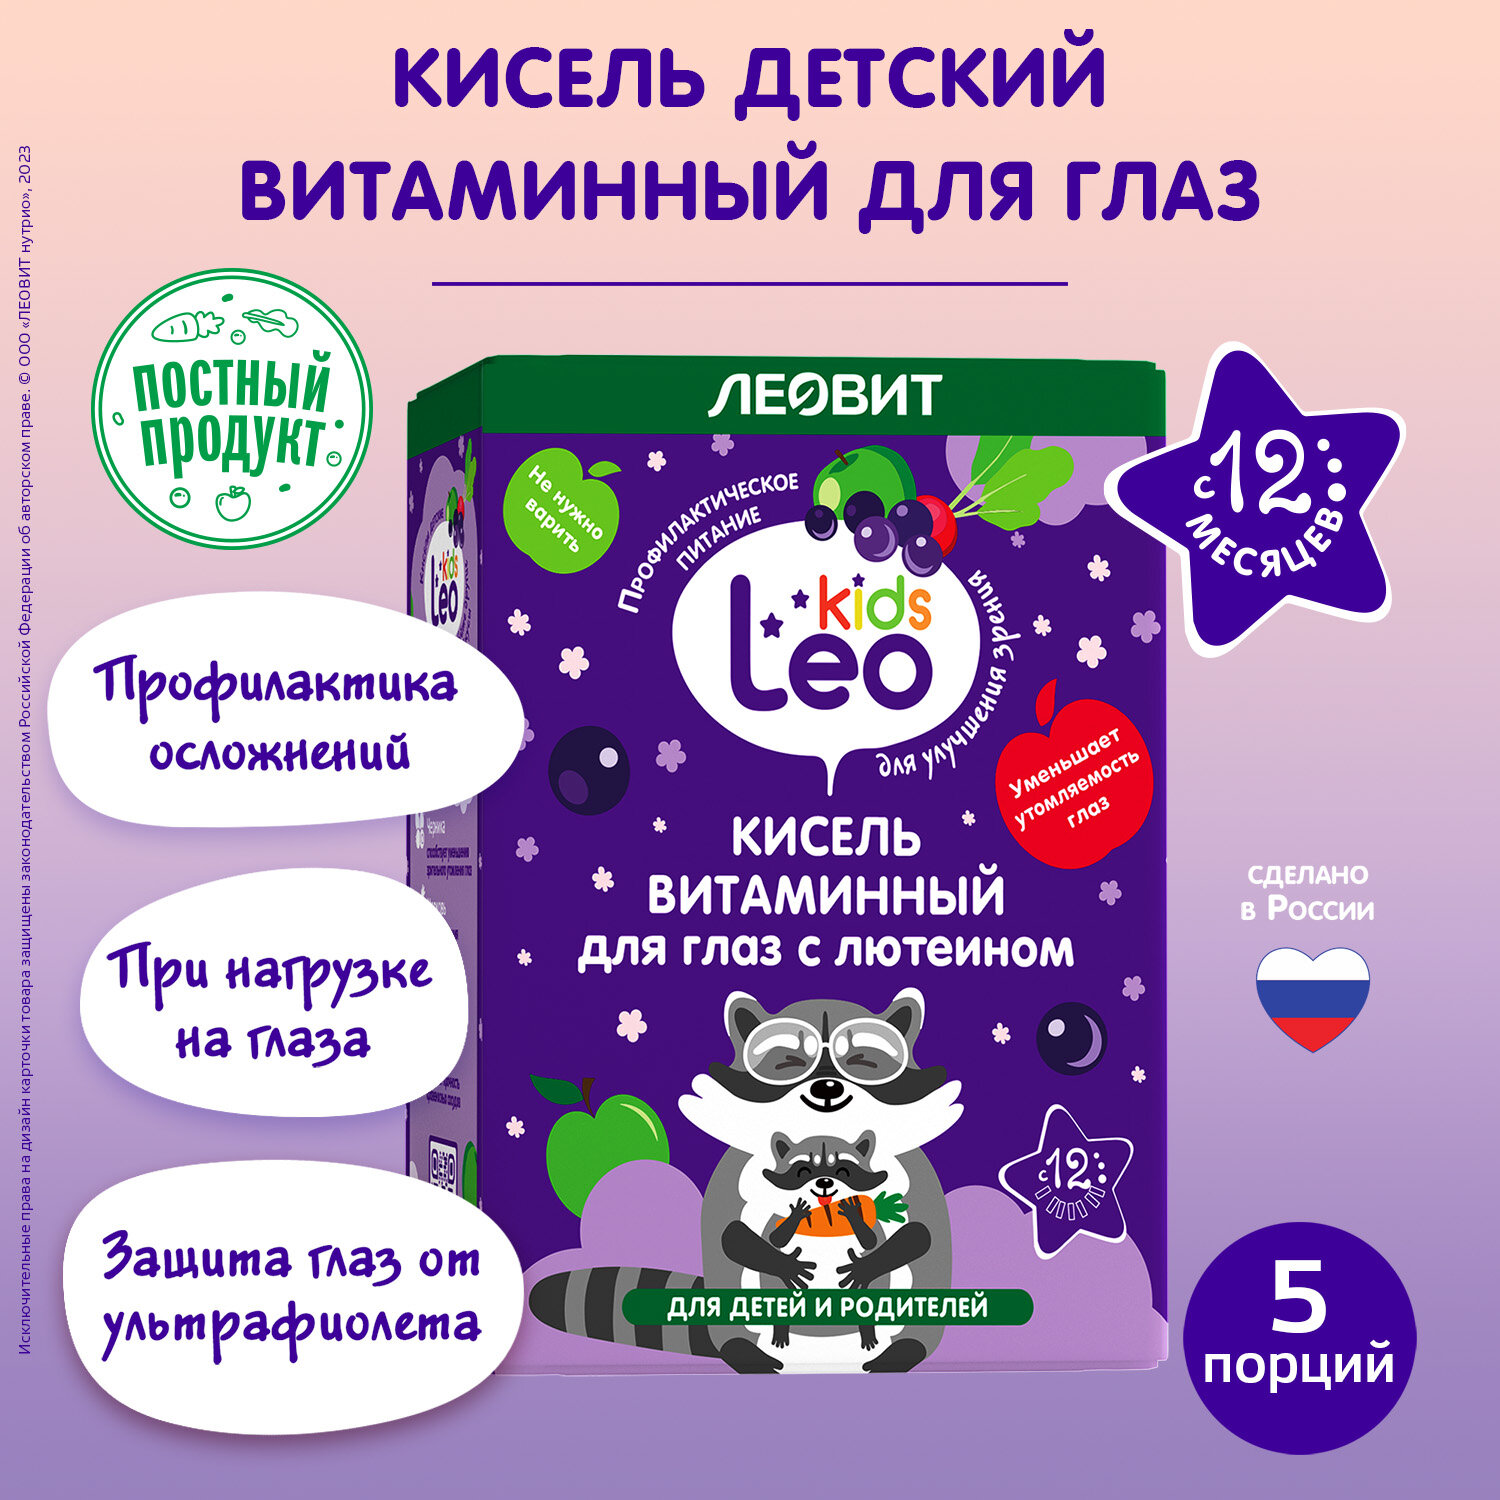 Кисель витаминный для глаз с лютеином для детей LeoKids Леовит 5 пакетов по 12 г Упаковка 60 г